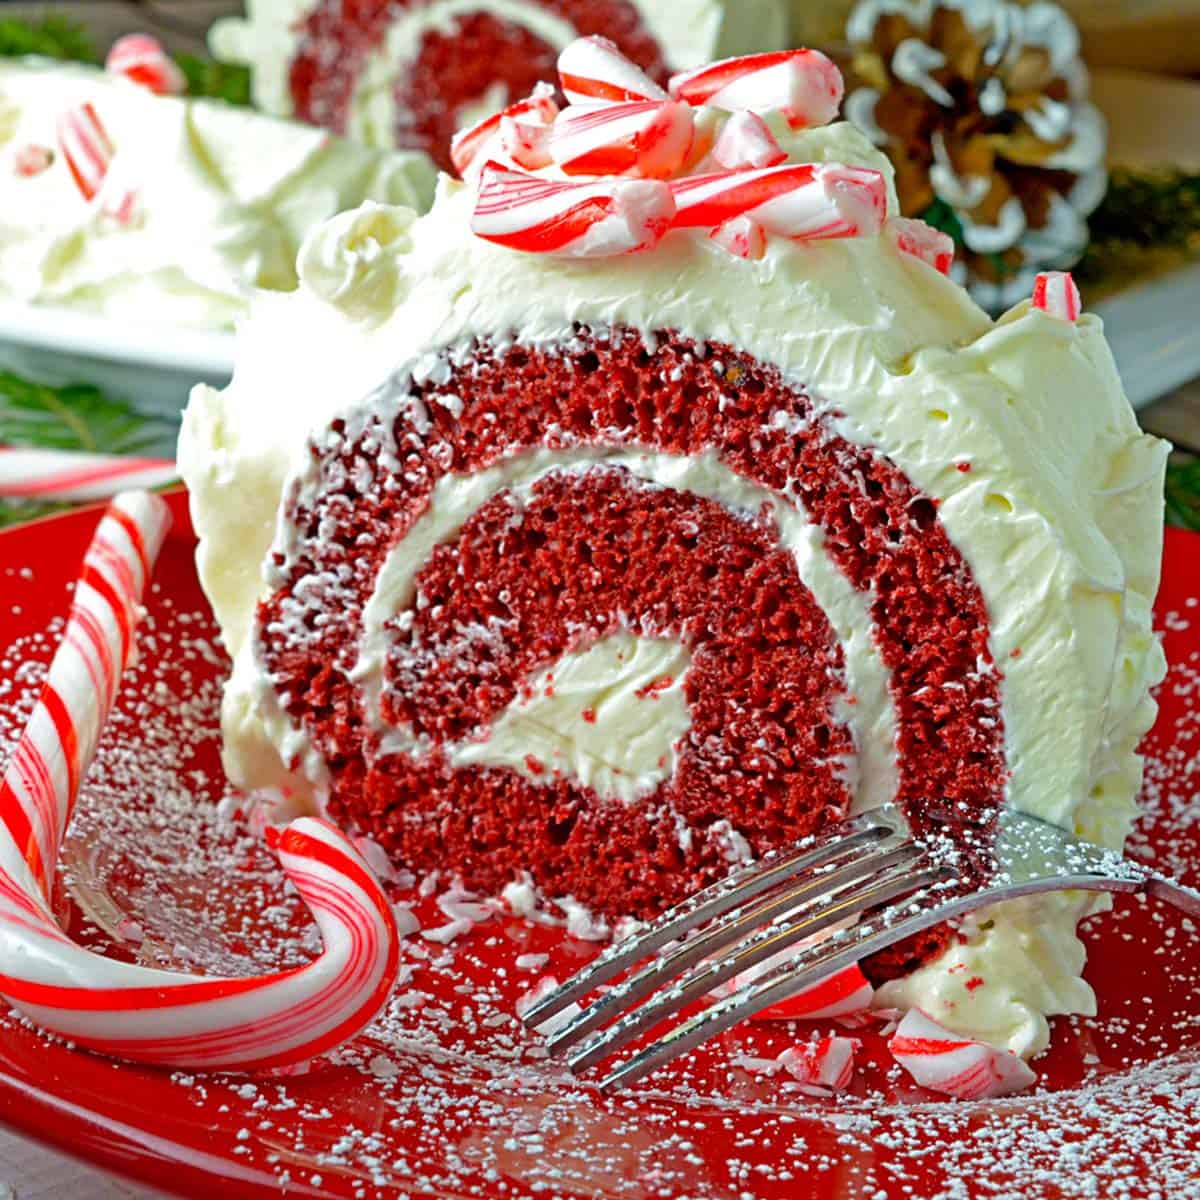 A red velvet rolled cake.